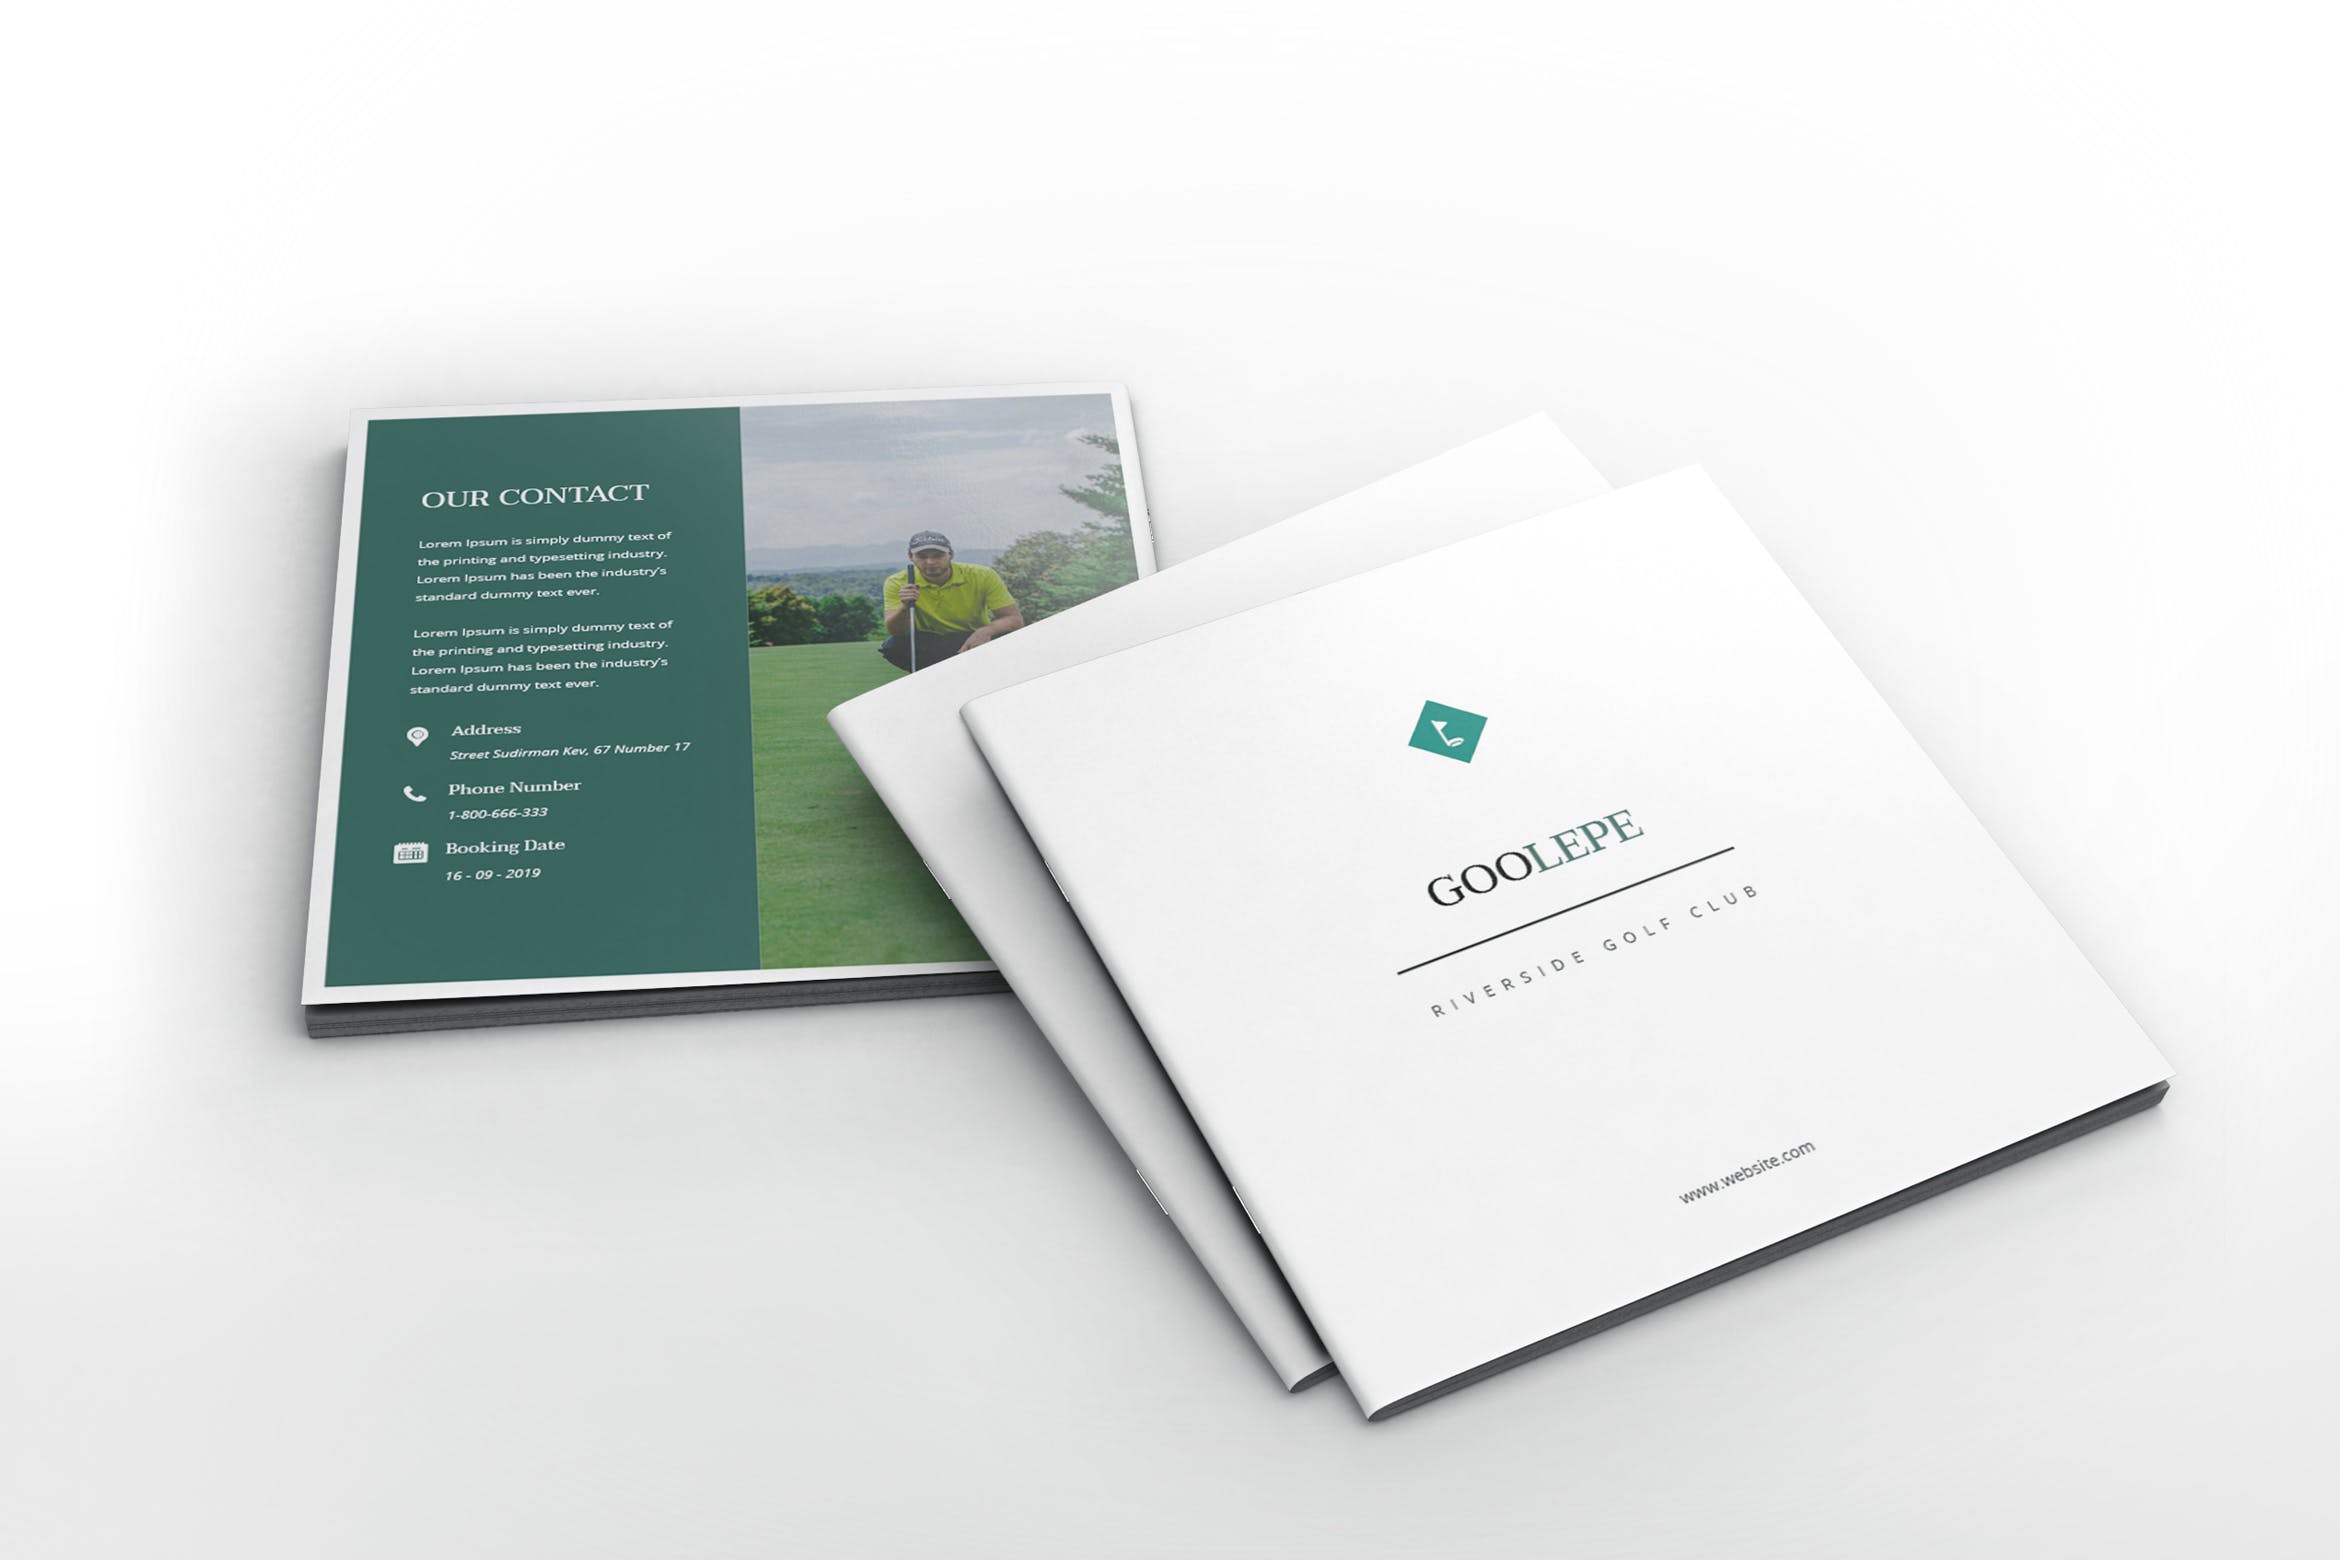 高尔夫俱乐部/体育运动场馆介绍画册设计模板 Golf Square Brochure Template插图